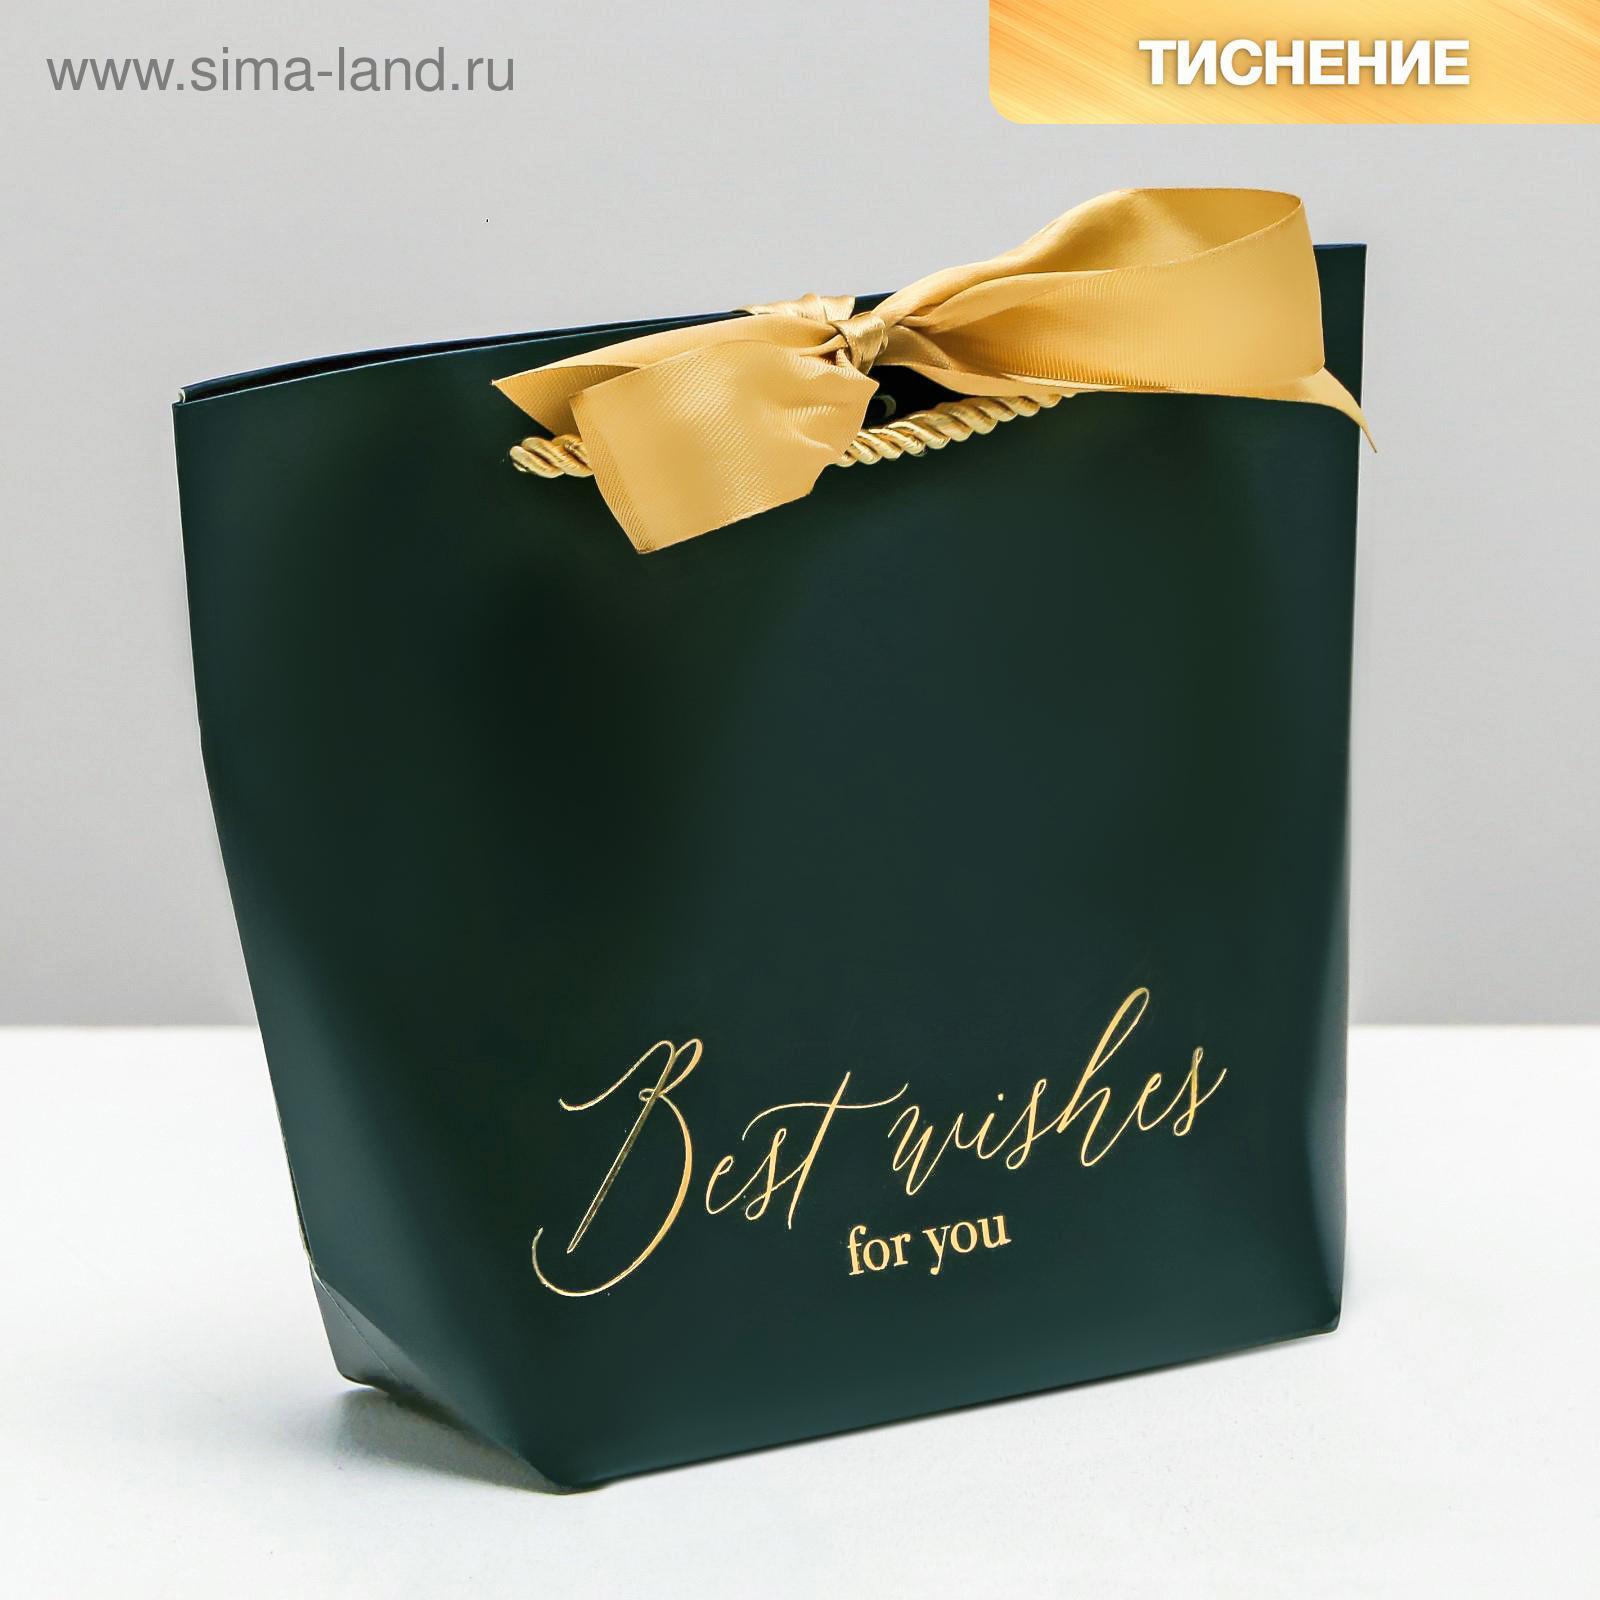 Пакет подарочный Best wishes, 21 х 17 х 7 см